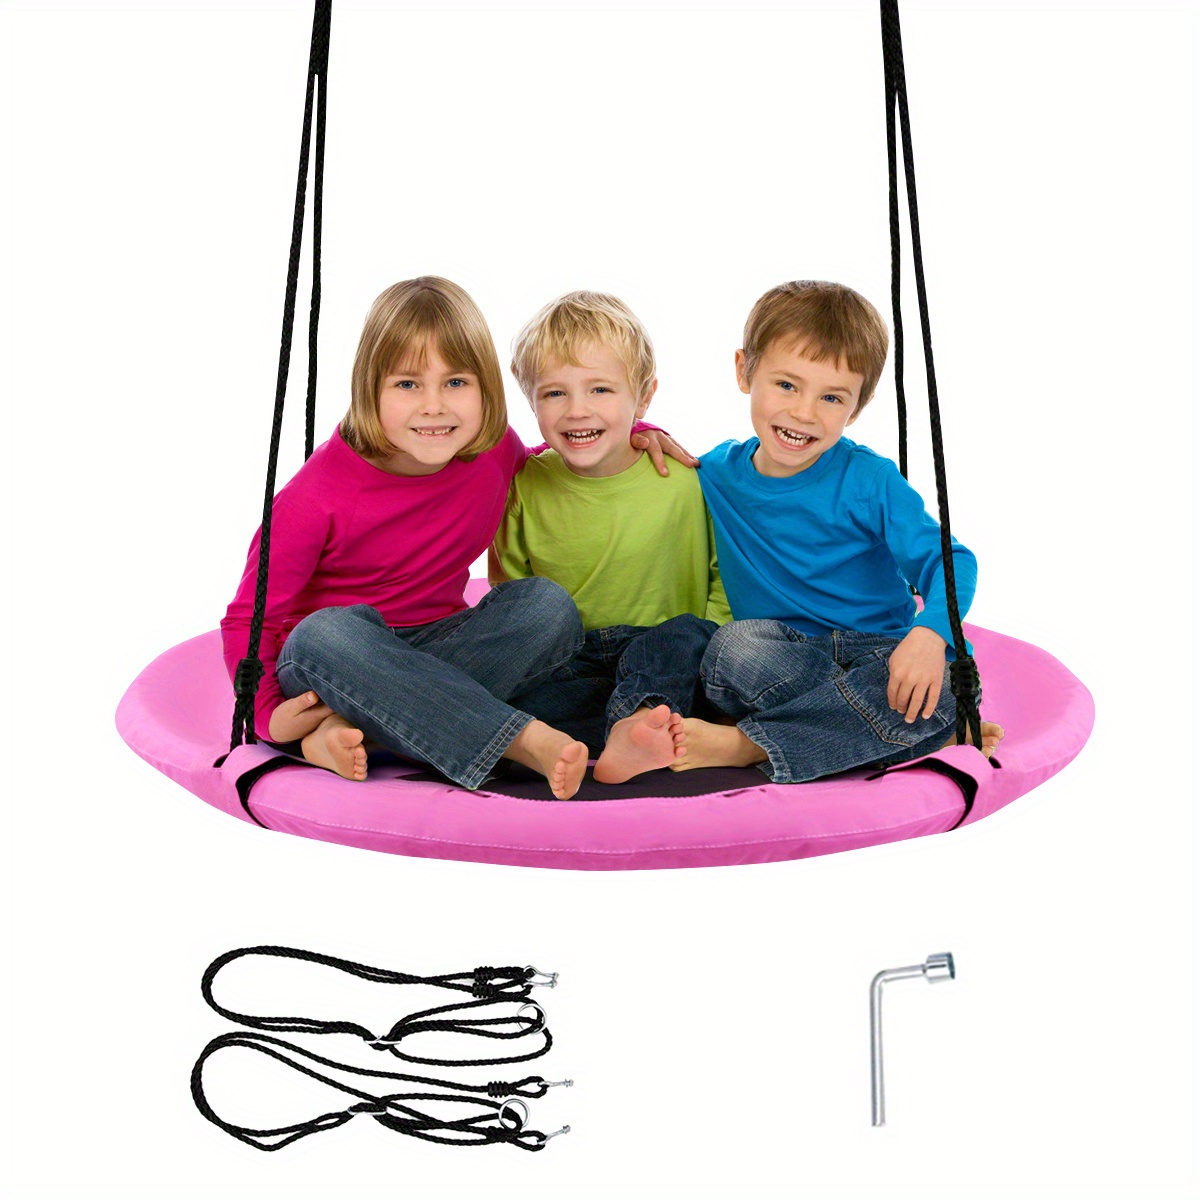 

Multigot 40" Flying Saucer Tree Swing Indoor Outdoor Play Set Kids Christmas Gift Pink